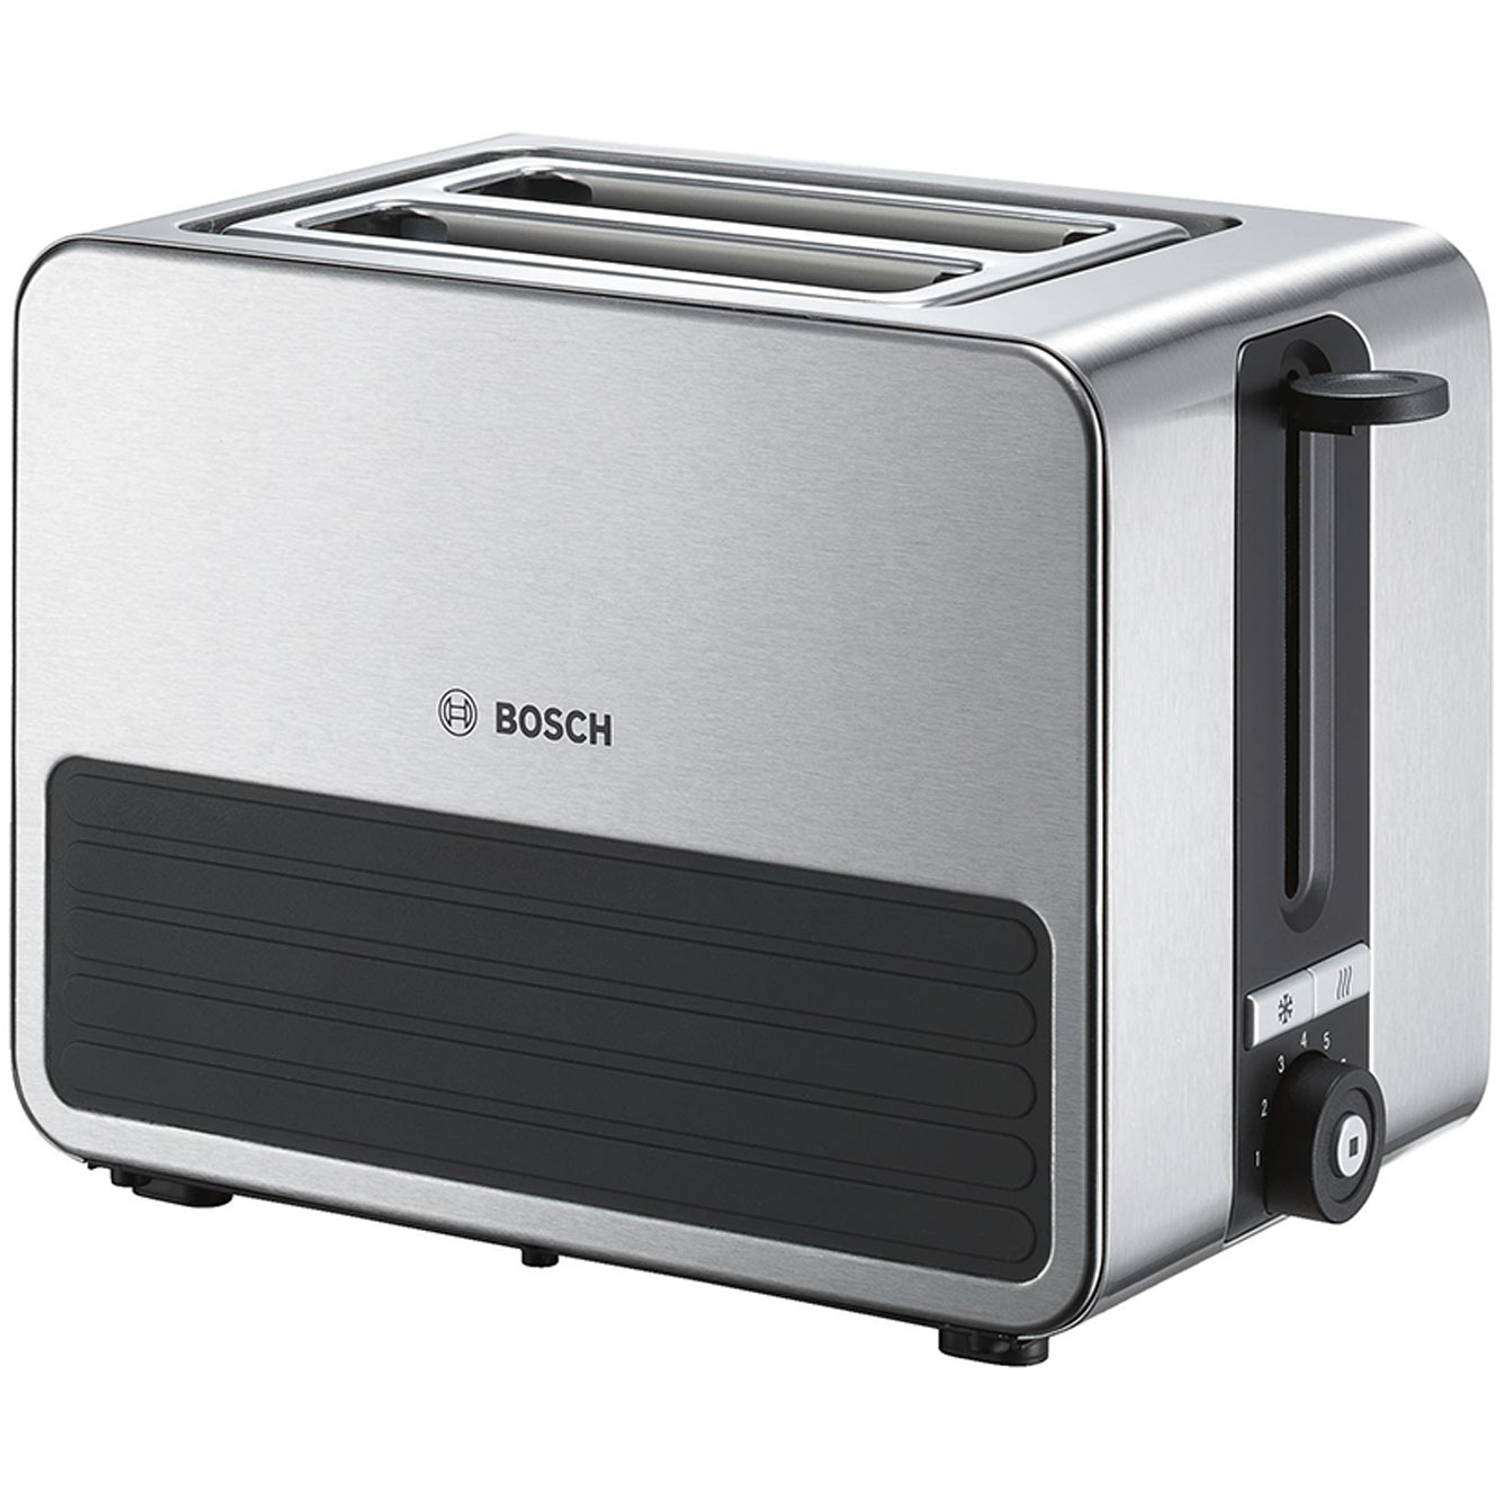 BOSCH compacte toaster TAT7S25, grijs-zwart